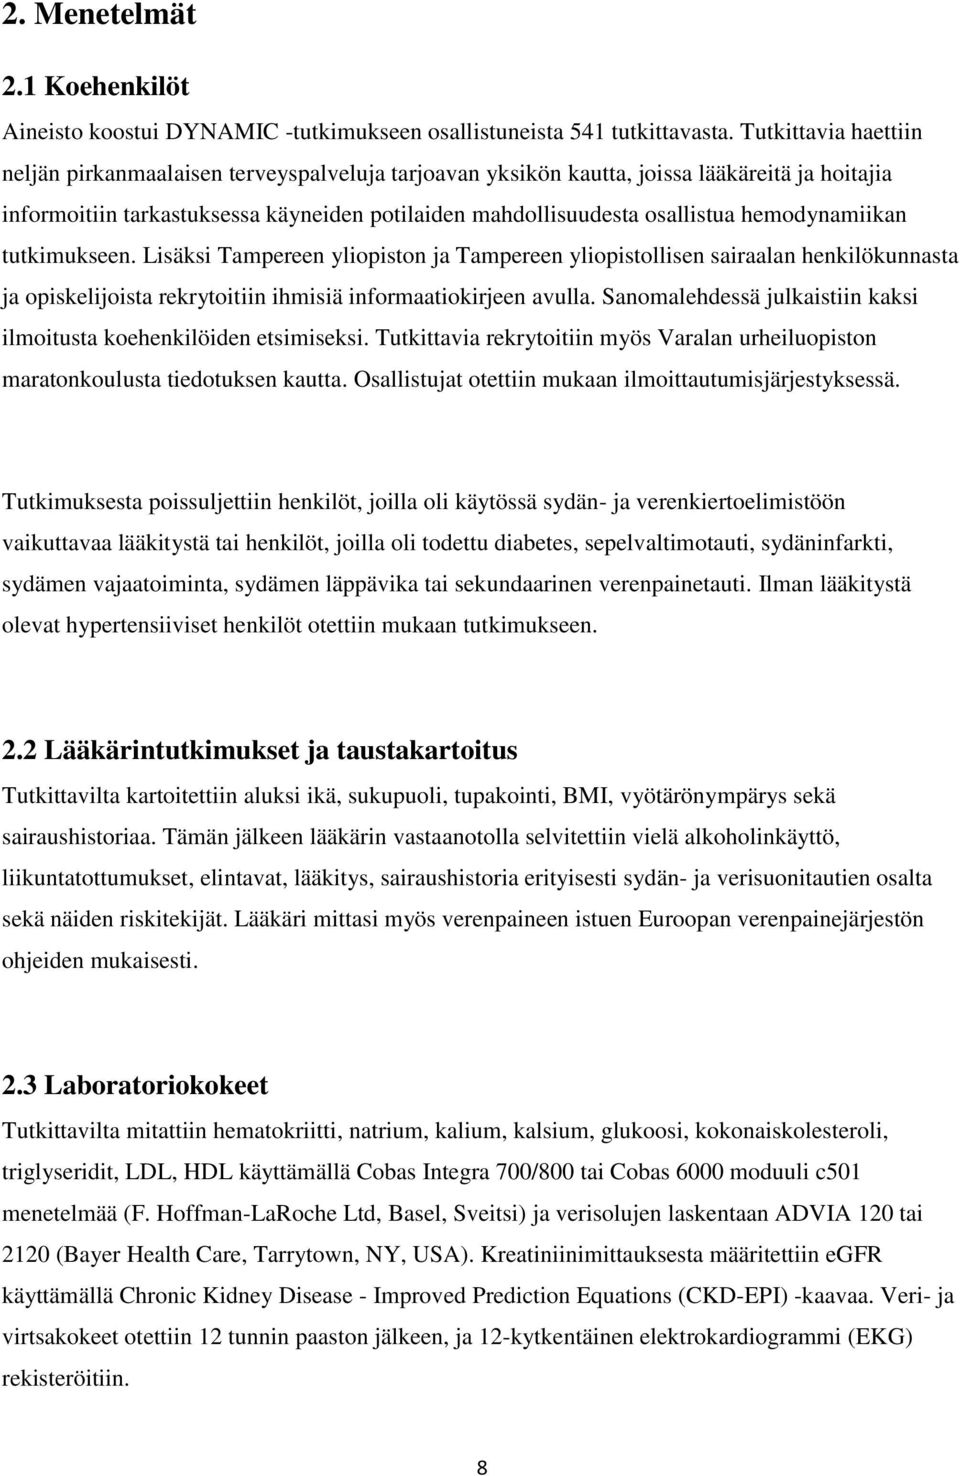 hemodynamiikan tutkimukseen. Lisäksi Tampereen yliopiston ja Tampereen yliopistollisen sairaalan henkilökunnasta ja opiskelijoista rekrytoitiin ihmisiä informaatiokirjeen avulla.